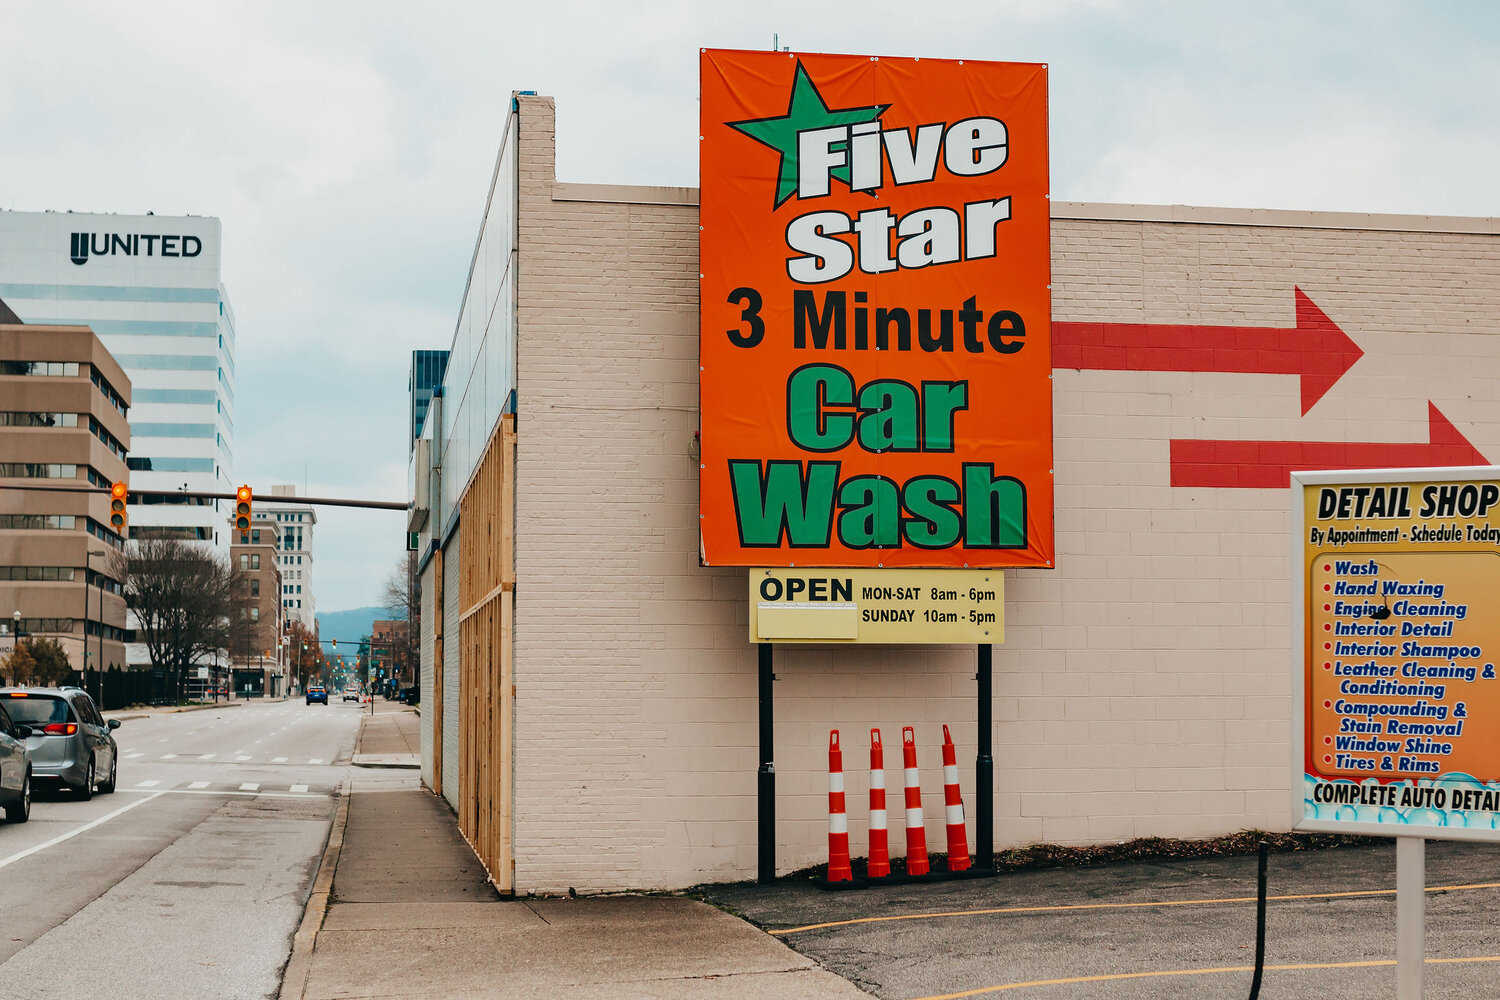 Charleston 5-star Car Wash